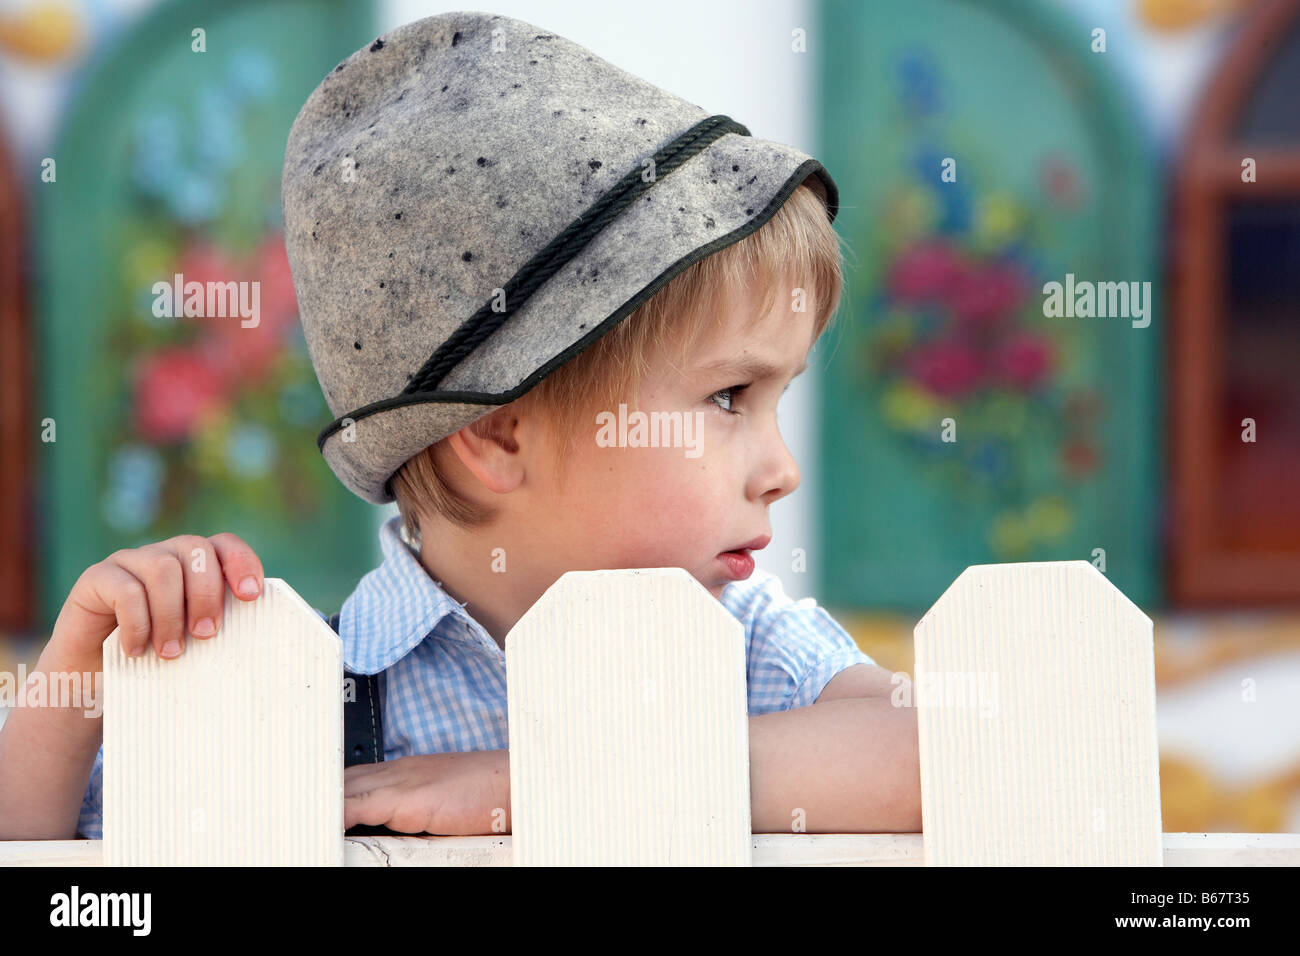 Boy (3-4 ans) debout derrière une clôture Banque D'Images